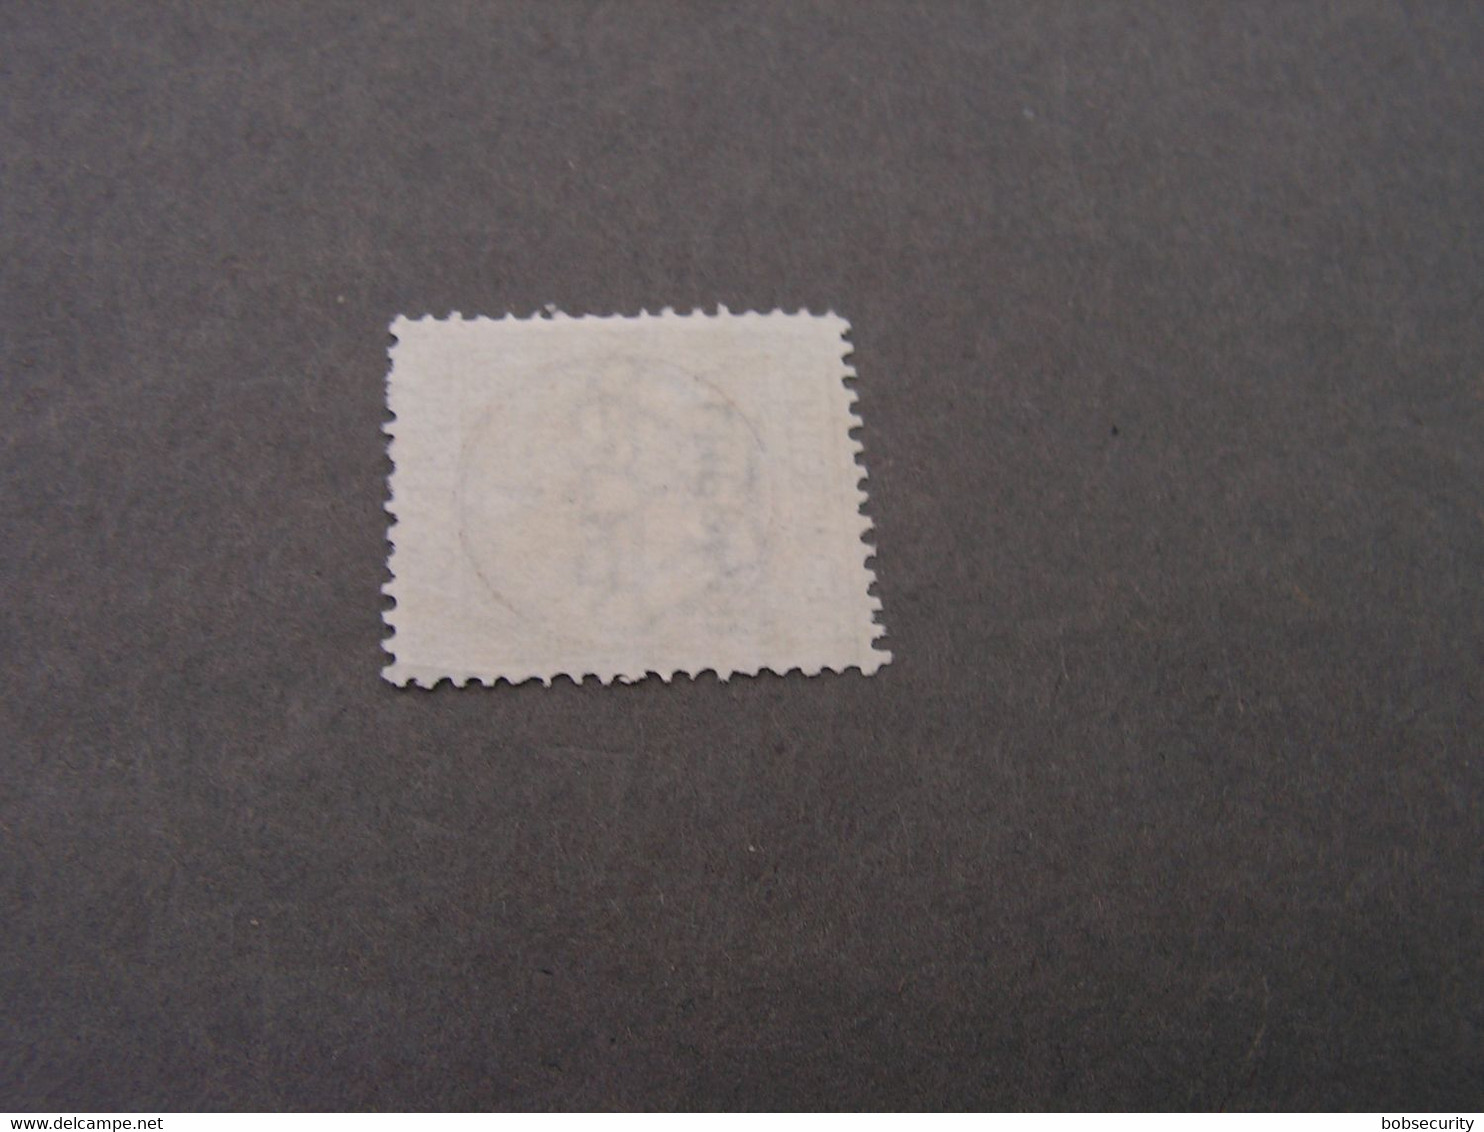 Italy  Old Stamp  Alberghi  ? - Lotti E Collezioni